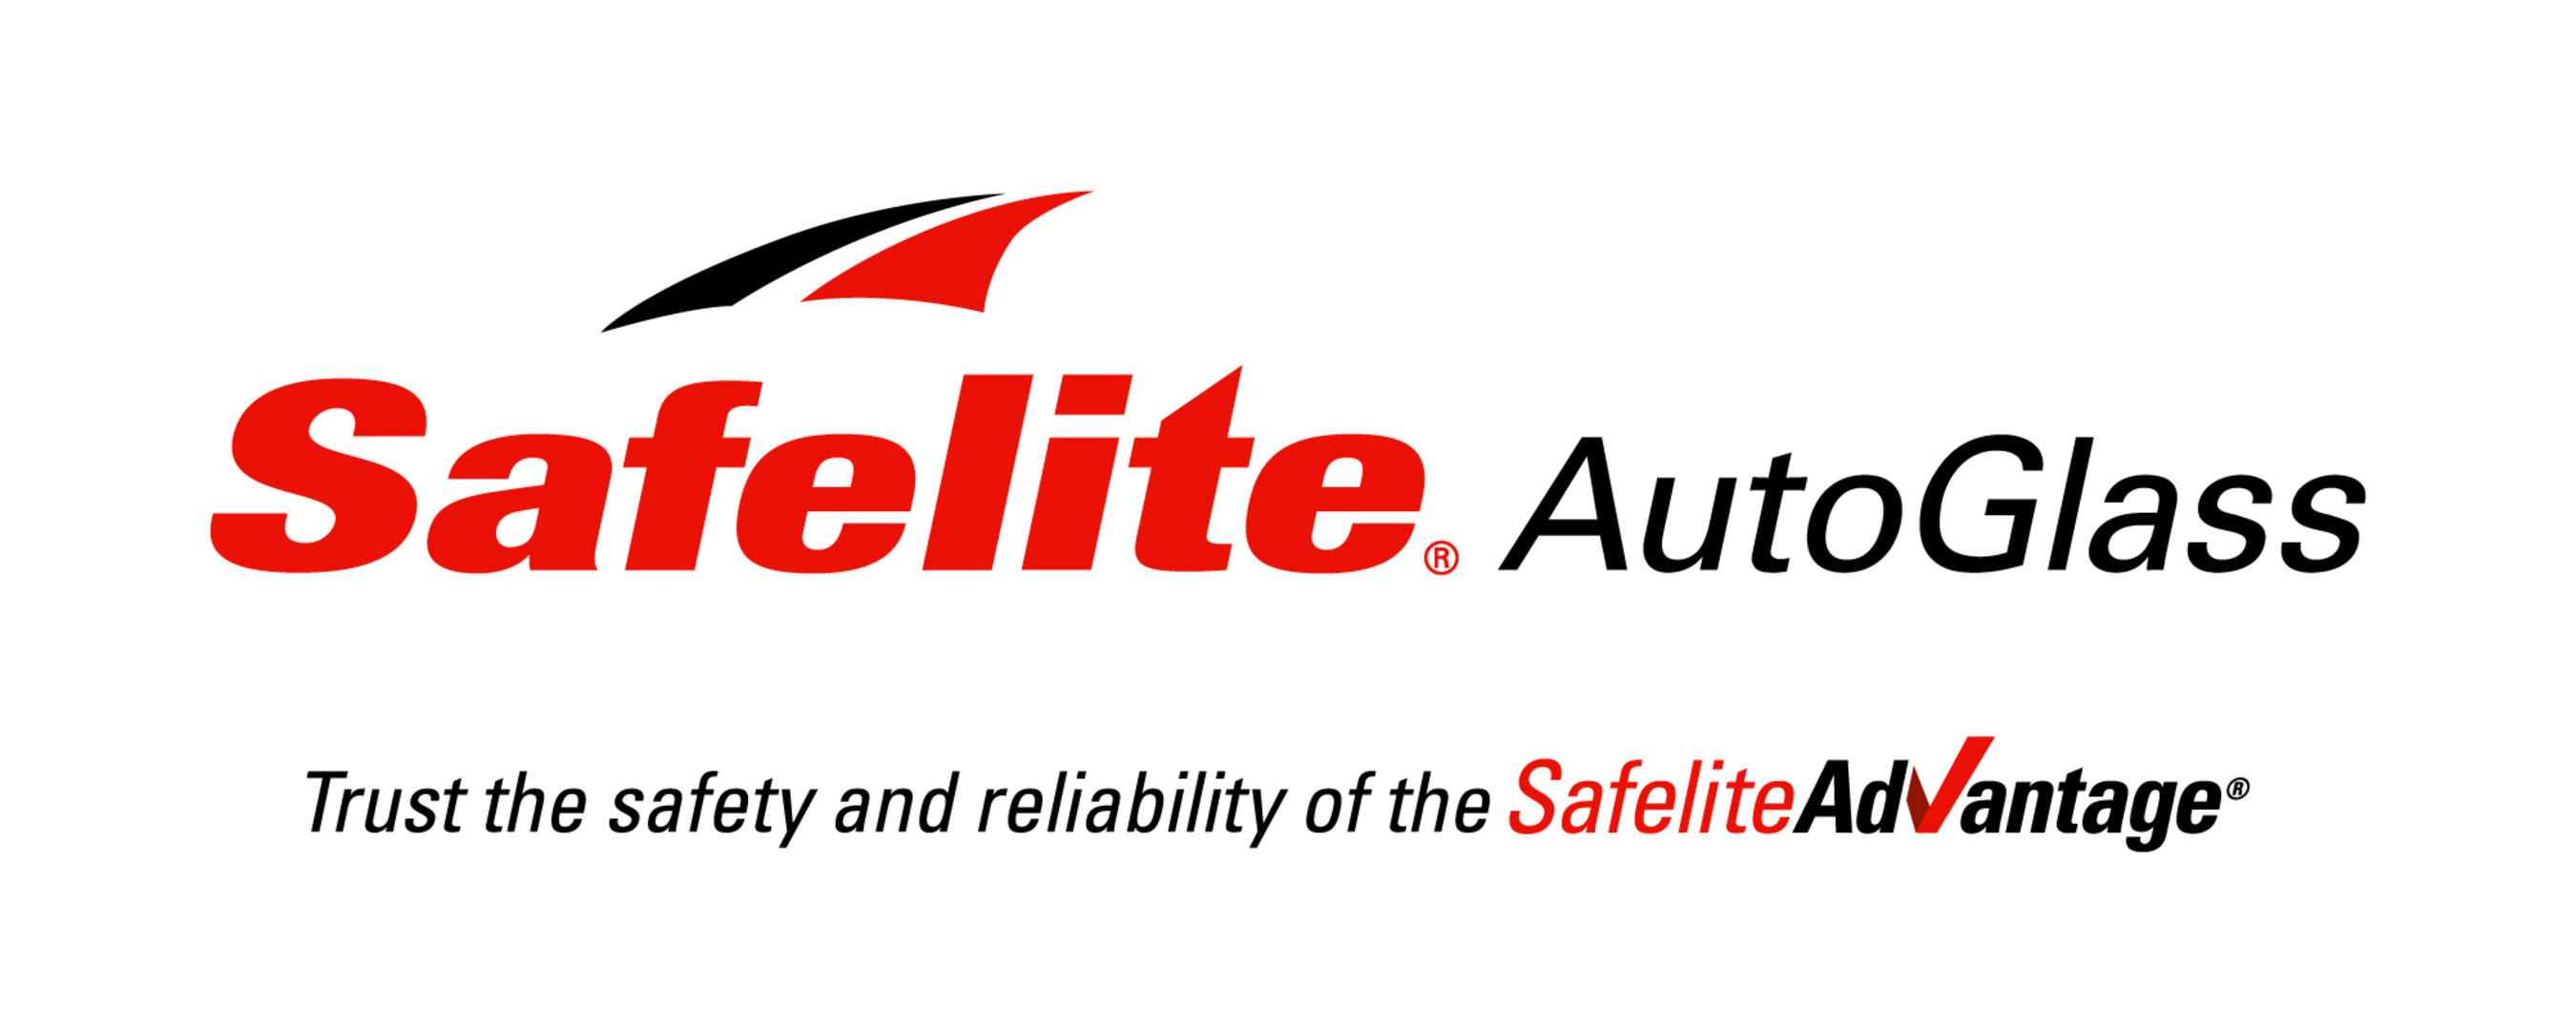 Safelite AutoGlass Logo. (PRNewsFoto/Safelite AutoGlass) (PRNewsFoto/)